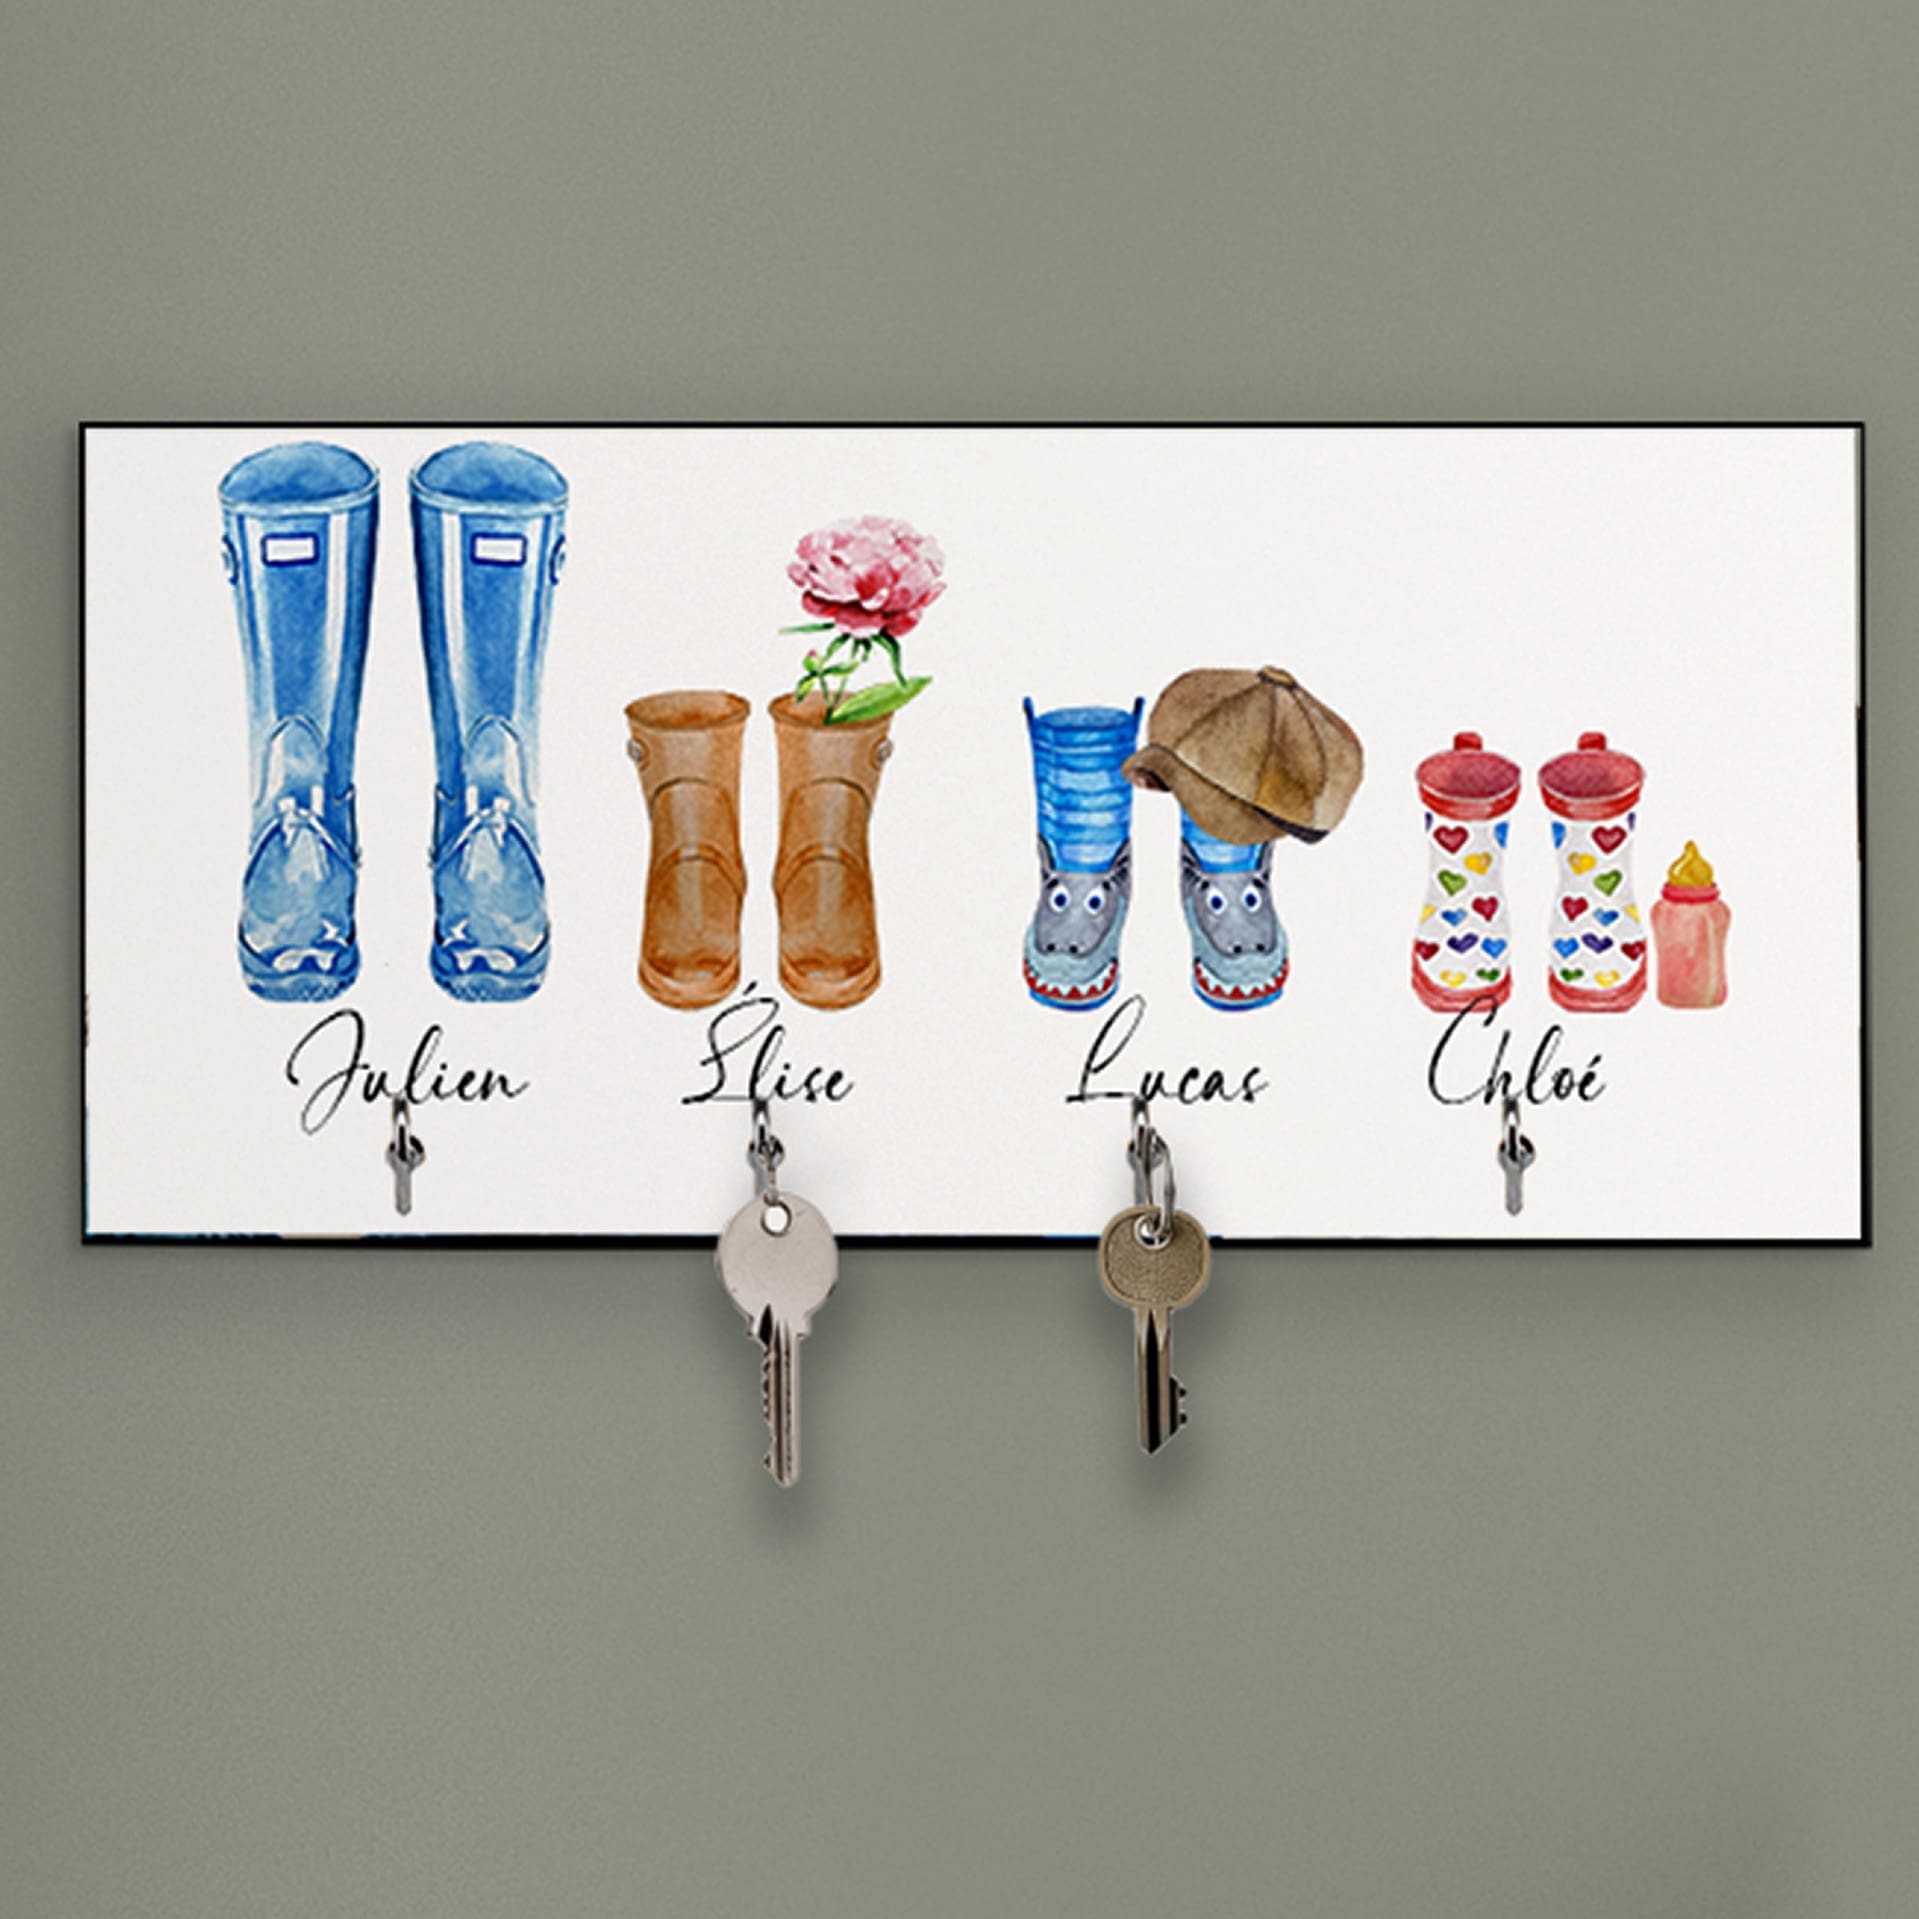 Accroche clé mural personnalisé avec des bottes représentant les membres de la famille au dessus de chaque crochet